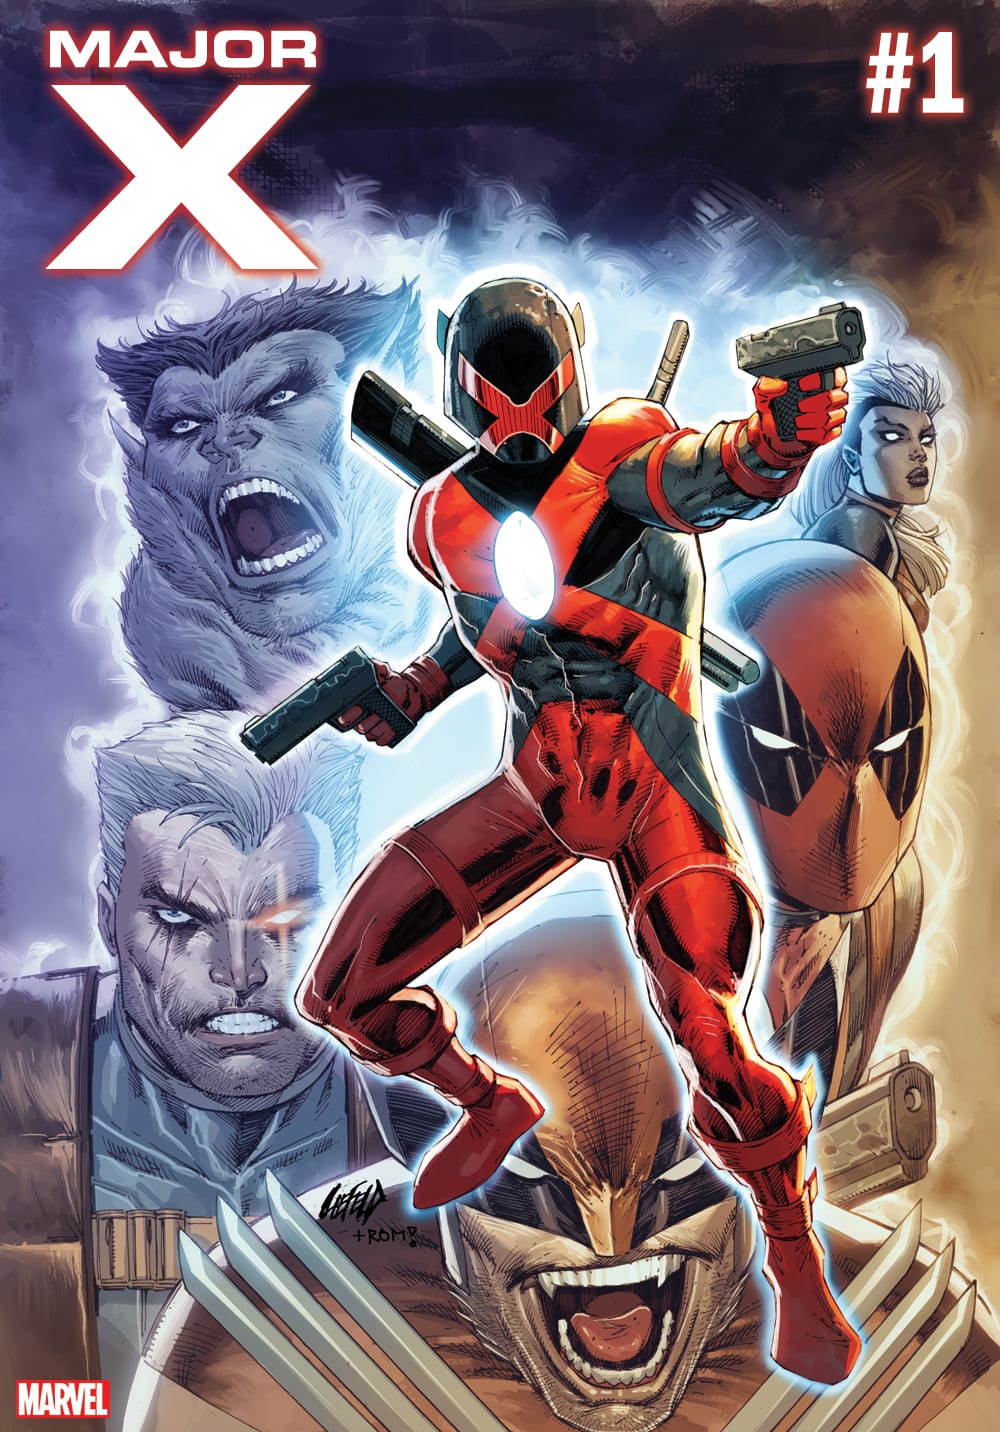 Rob Liefeld presentará el nuevo y misterioso personaje de Marvel en Major X